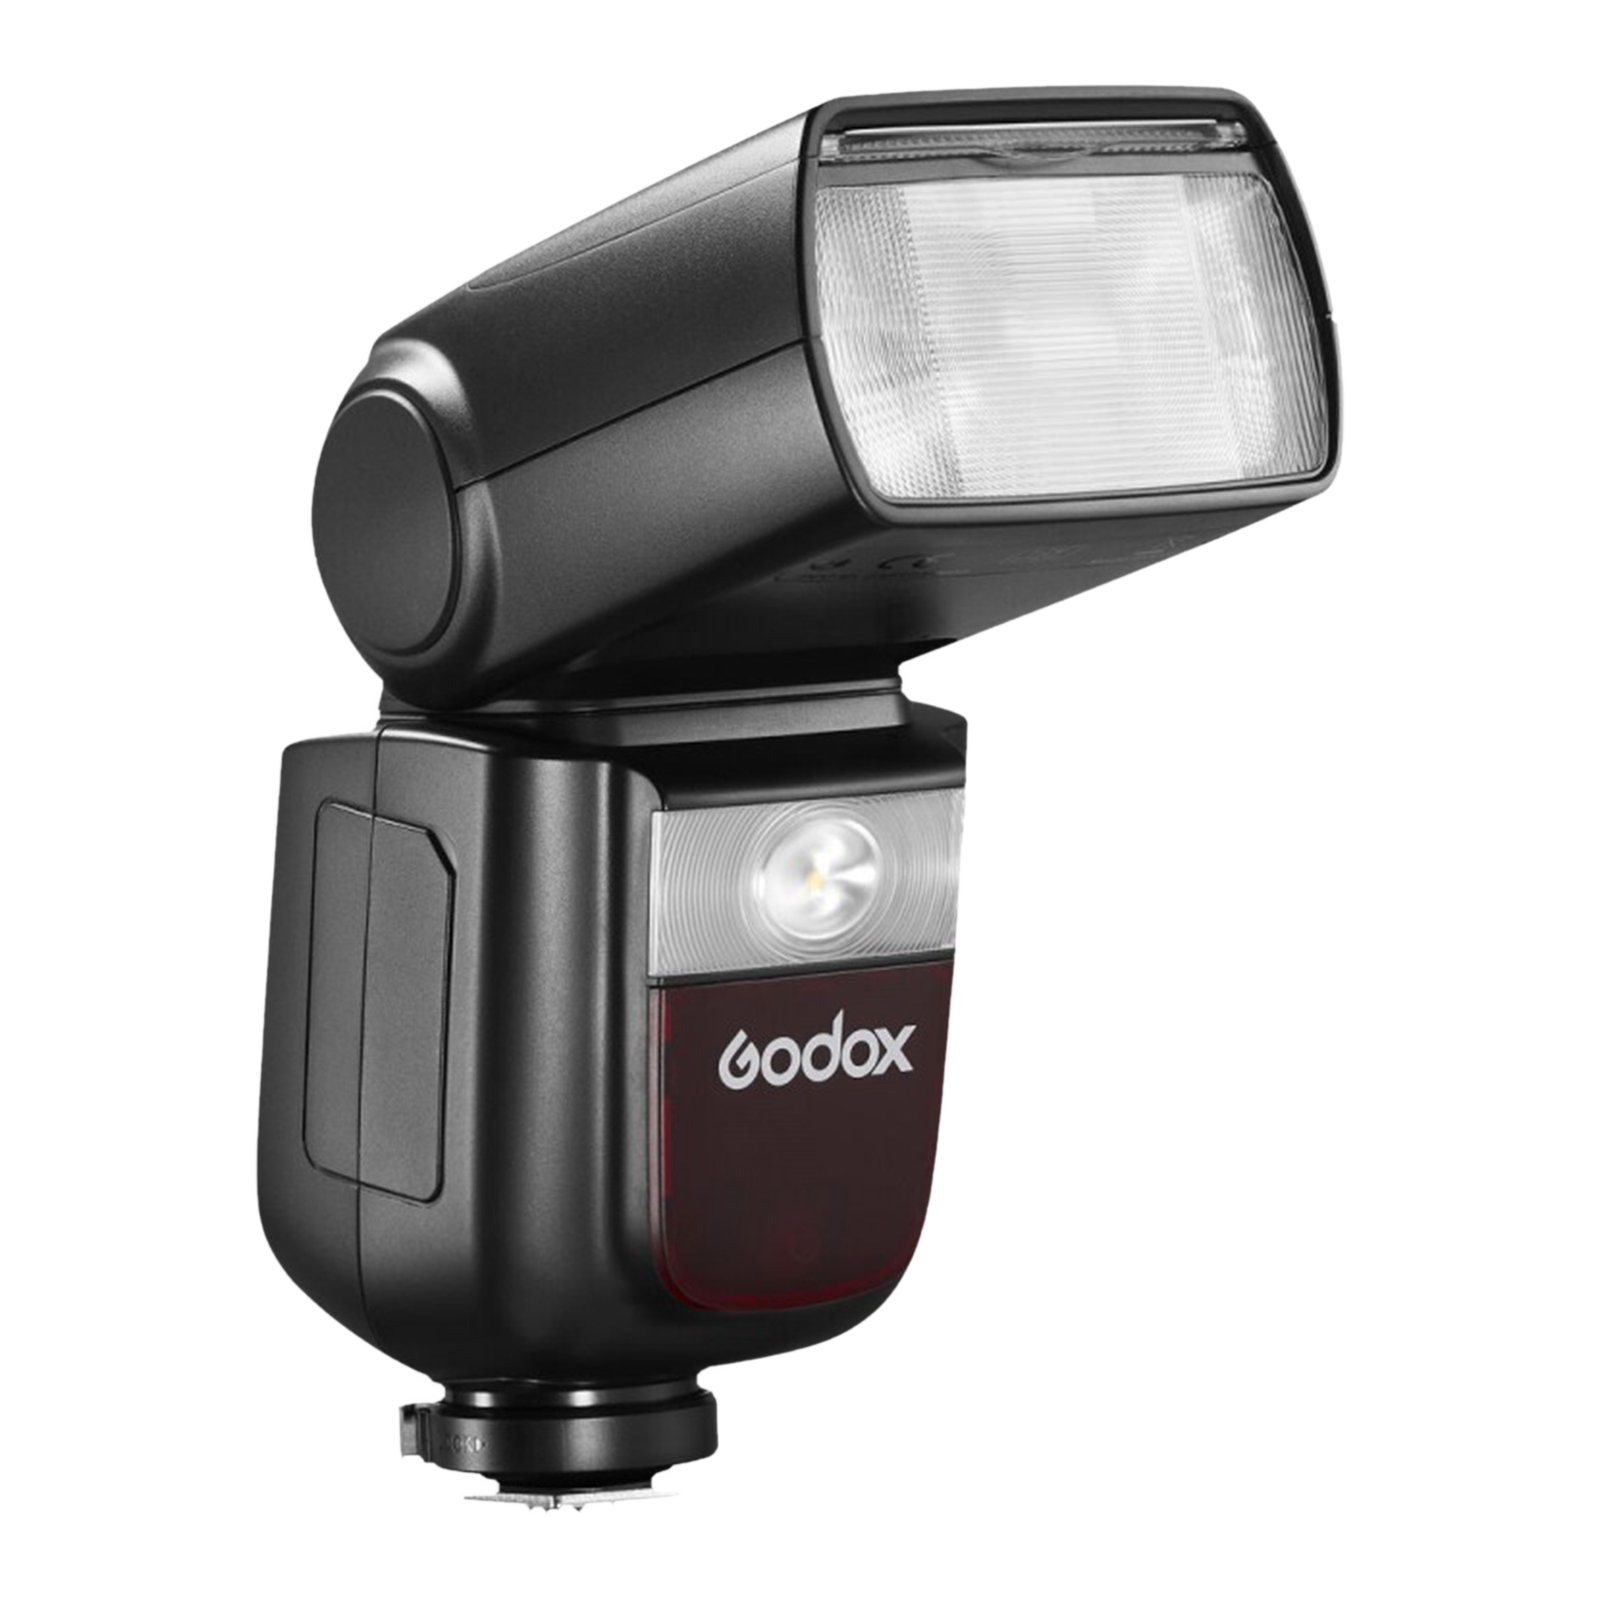 Godox V860IIIF Kit Camera Flash for Fujifilm (Quick Release Lock)_1